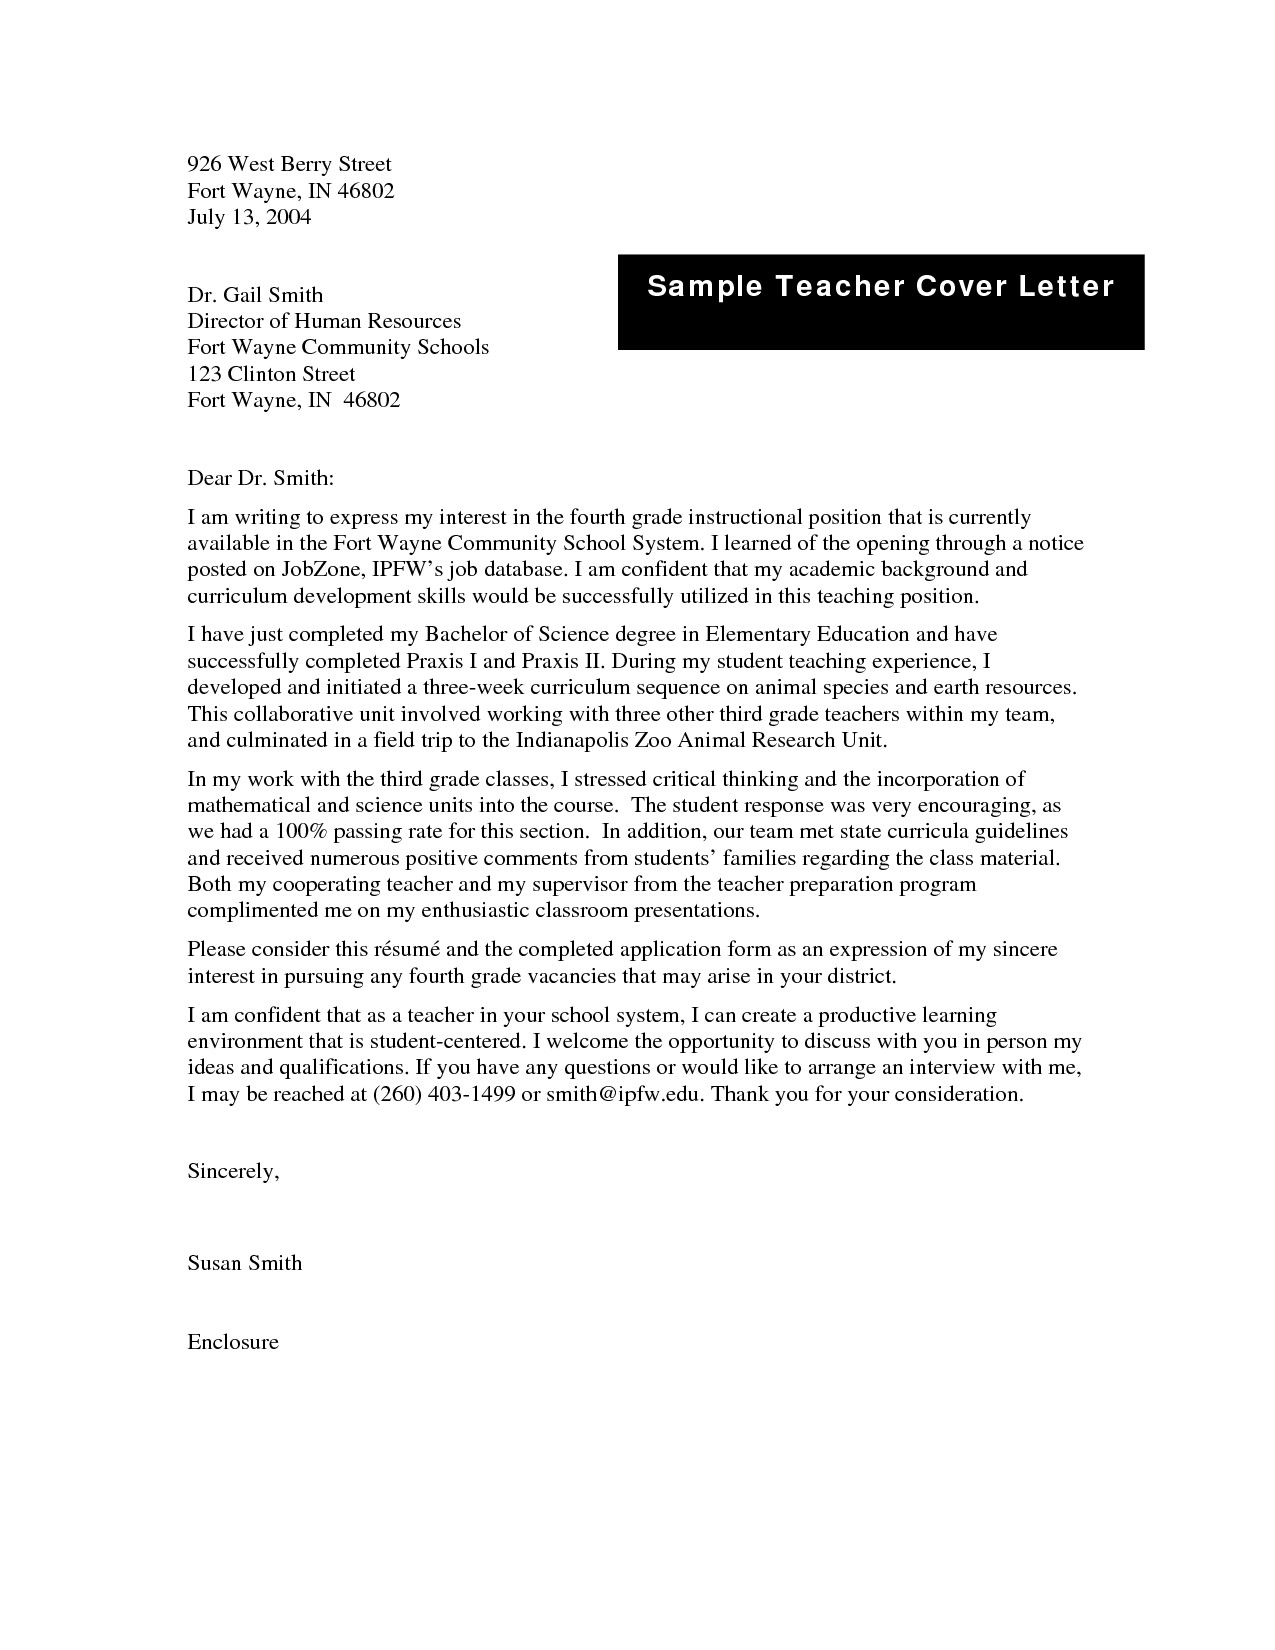 Teacher Cover Letter Elementary Sample Application Letter For School Teacher Job Valid Sample